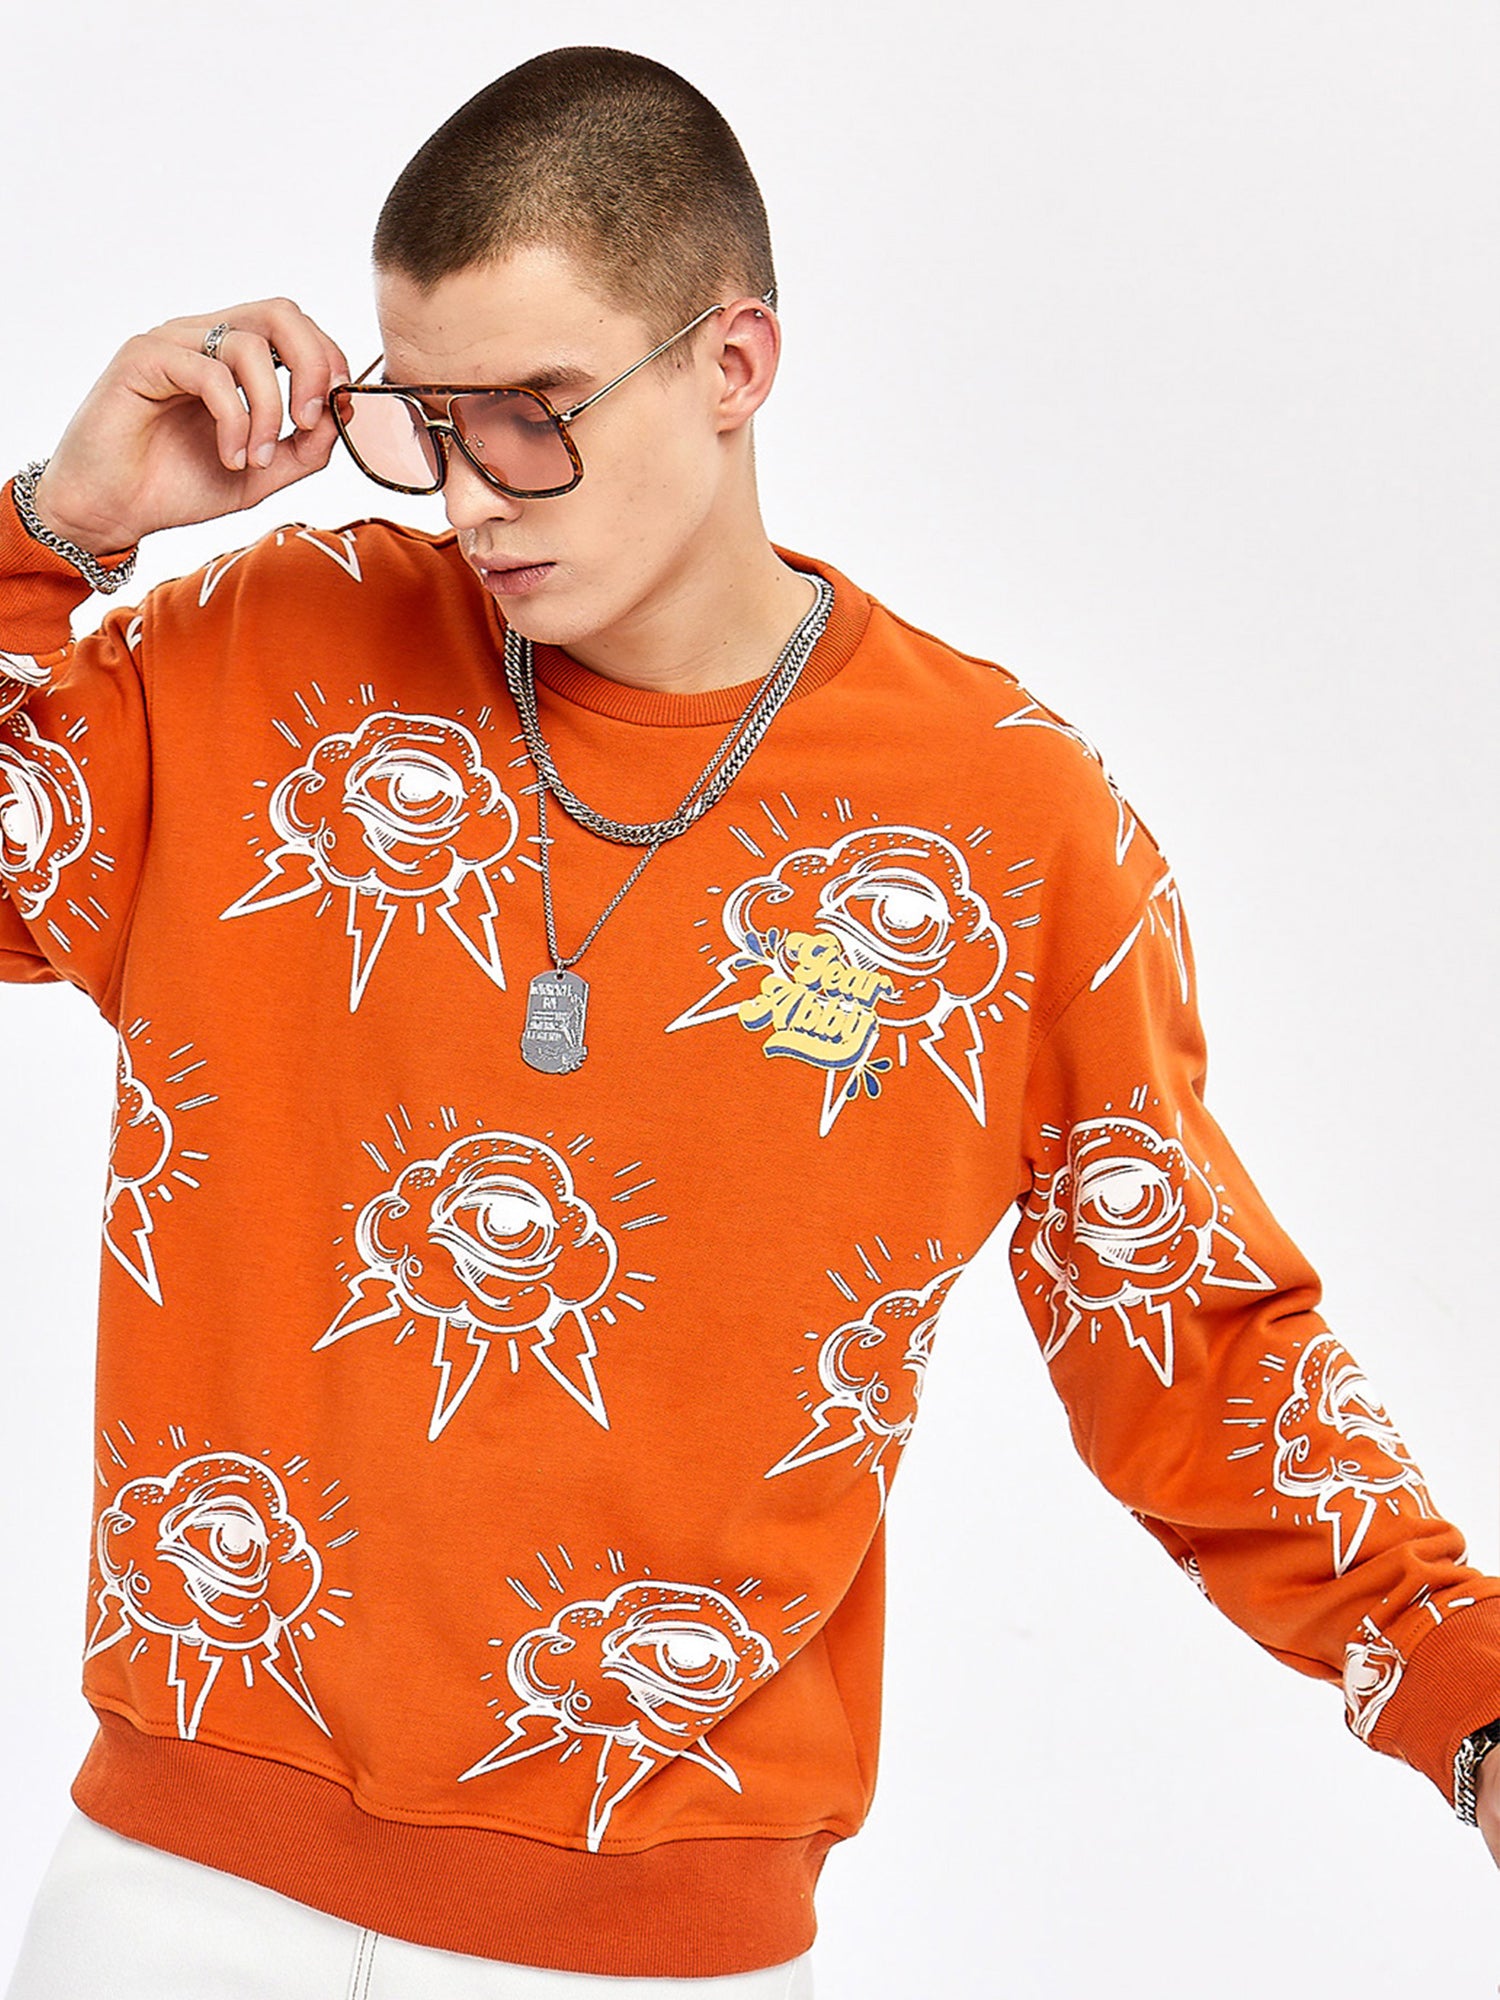 JUSTNOTAG Letterr Cotton Round Neck Orange Sweatshirts Tops